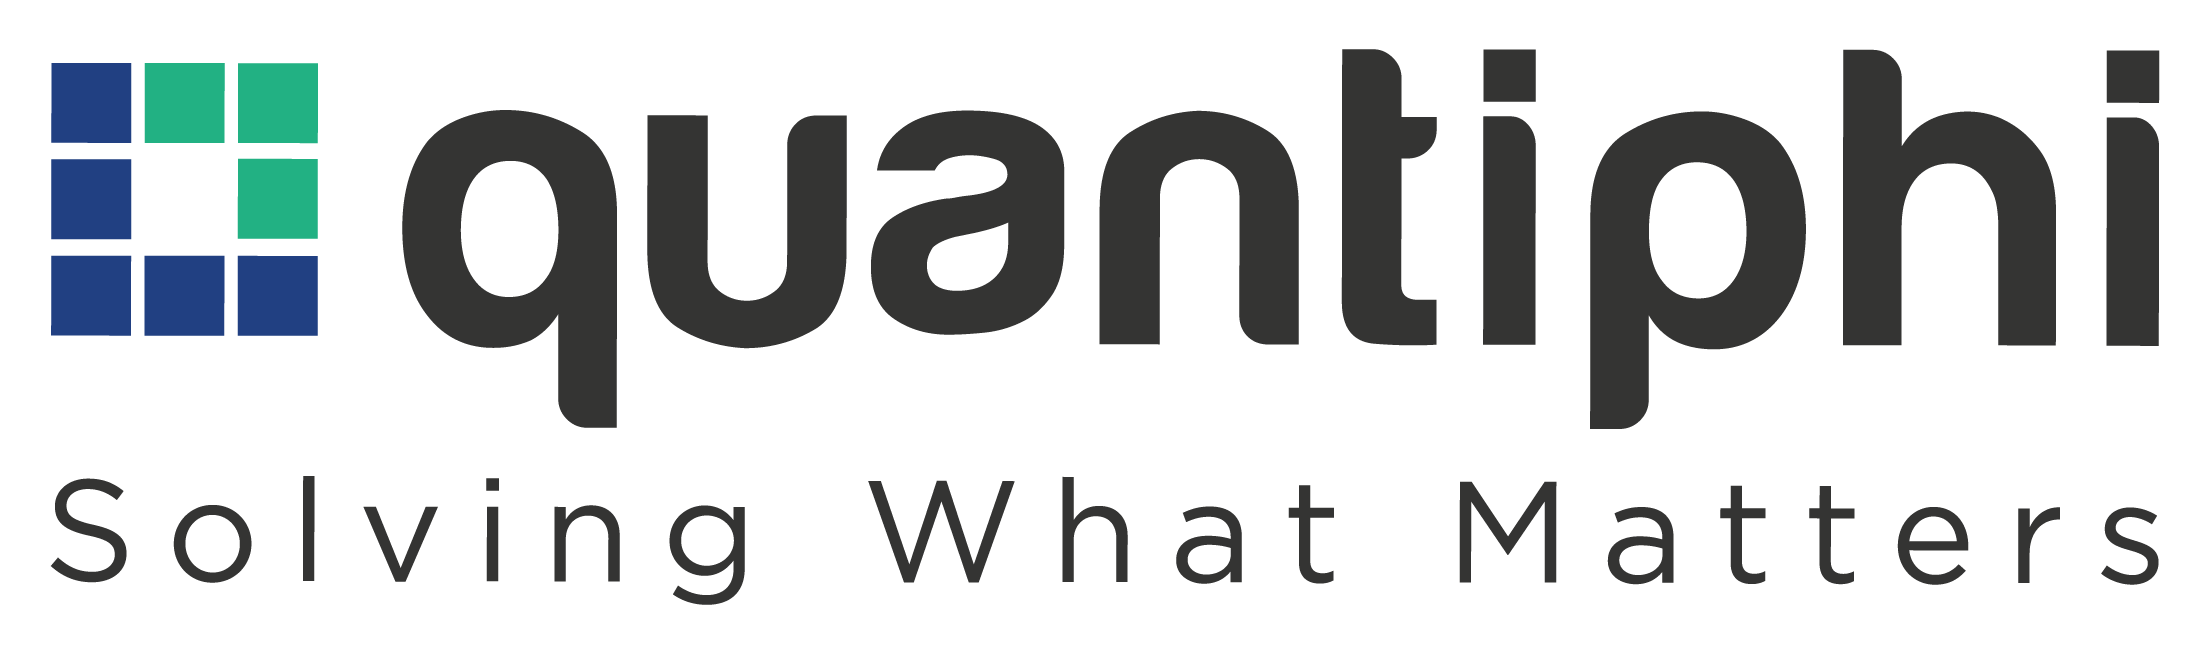 Logotipo de Quantiphi